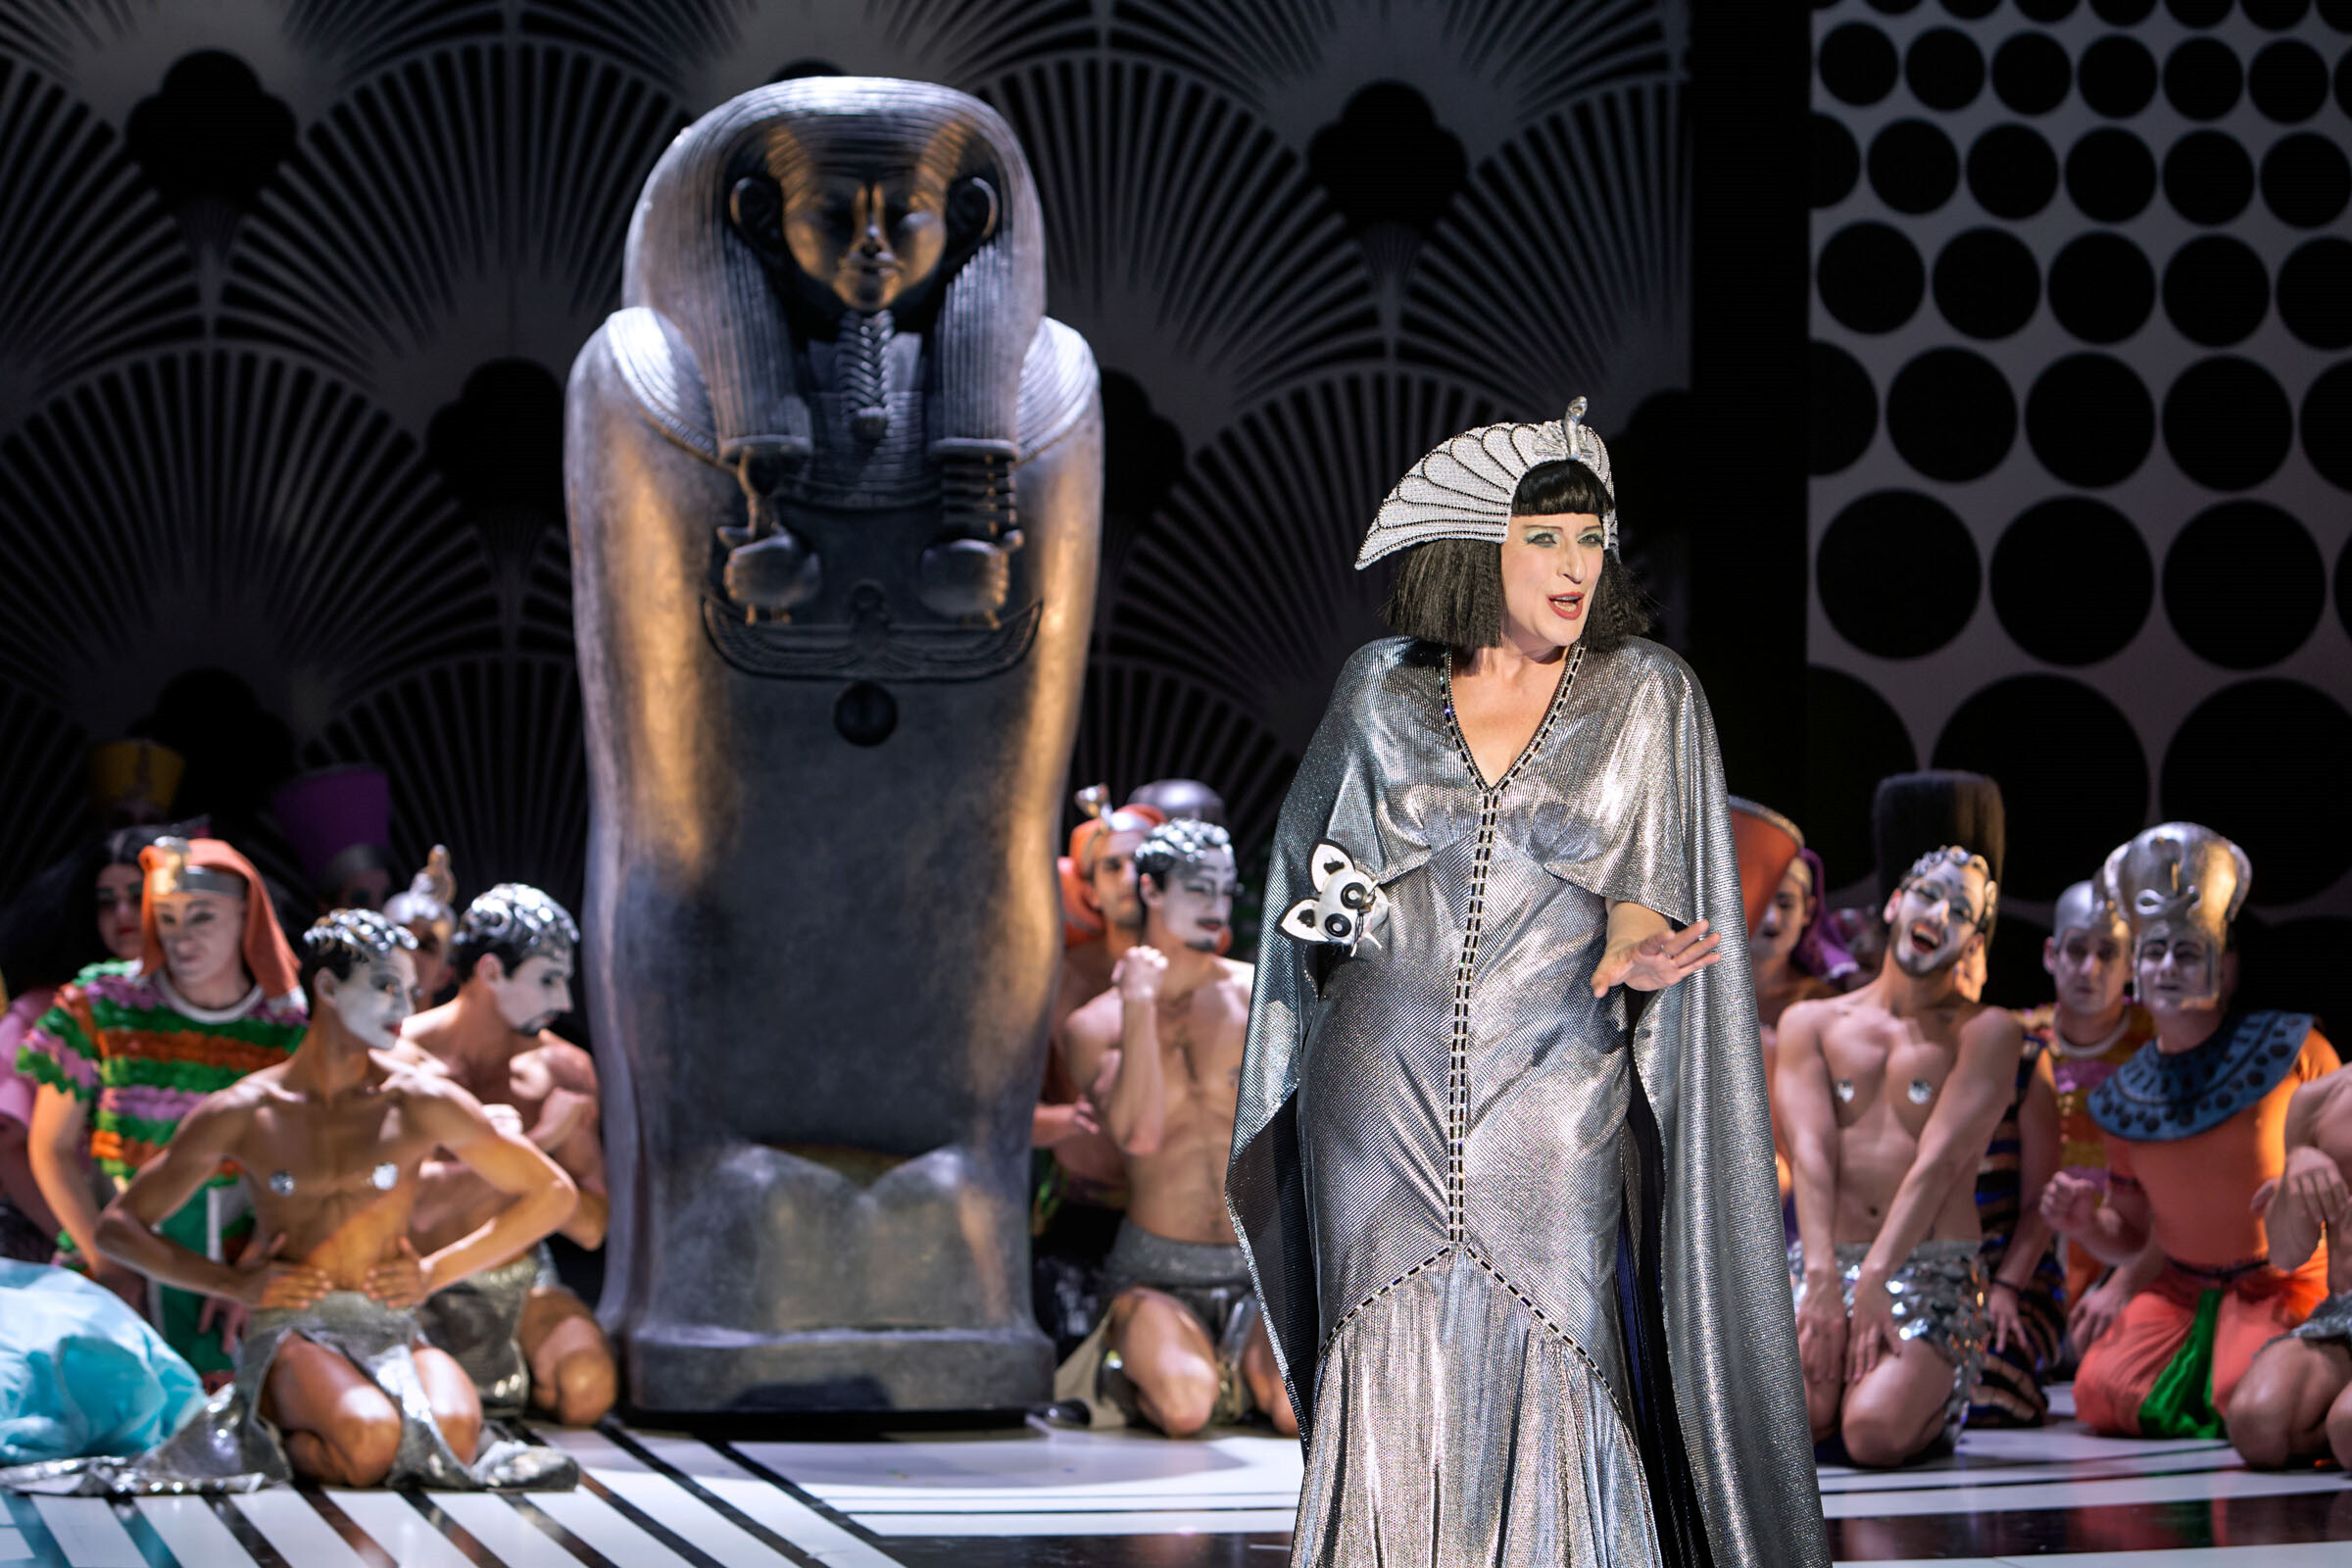 Dagmar Manzel als Cleopatra auf Bühne Komische Oper Berlin, im Hintergrund ein Sarkophag, umgeben von Tänzer:innen sitzend